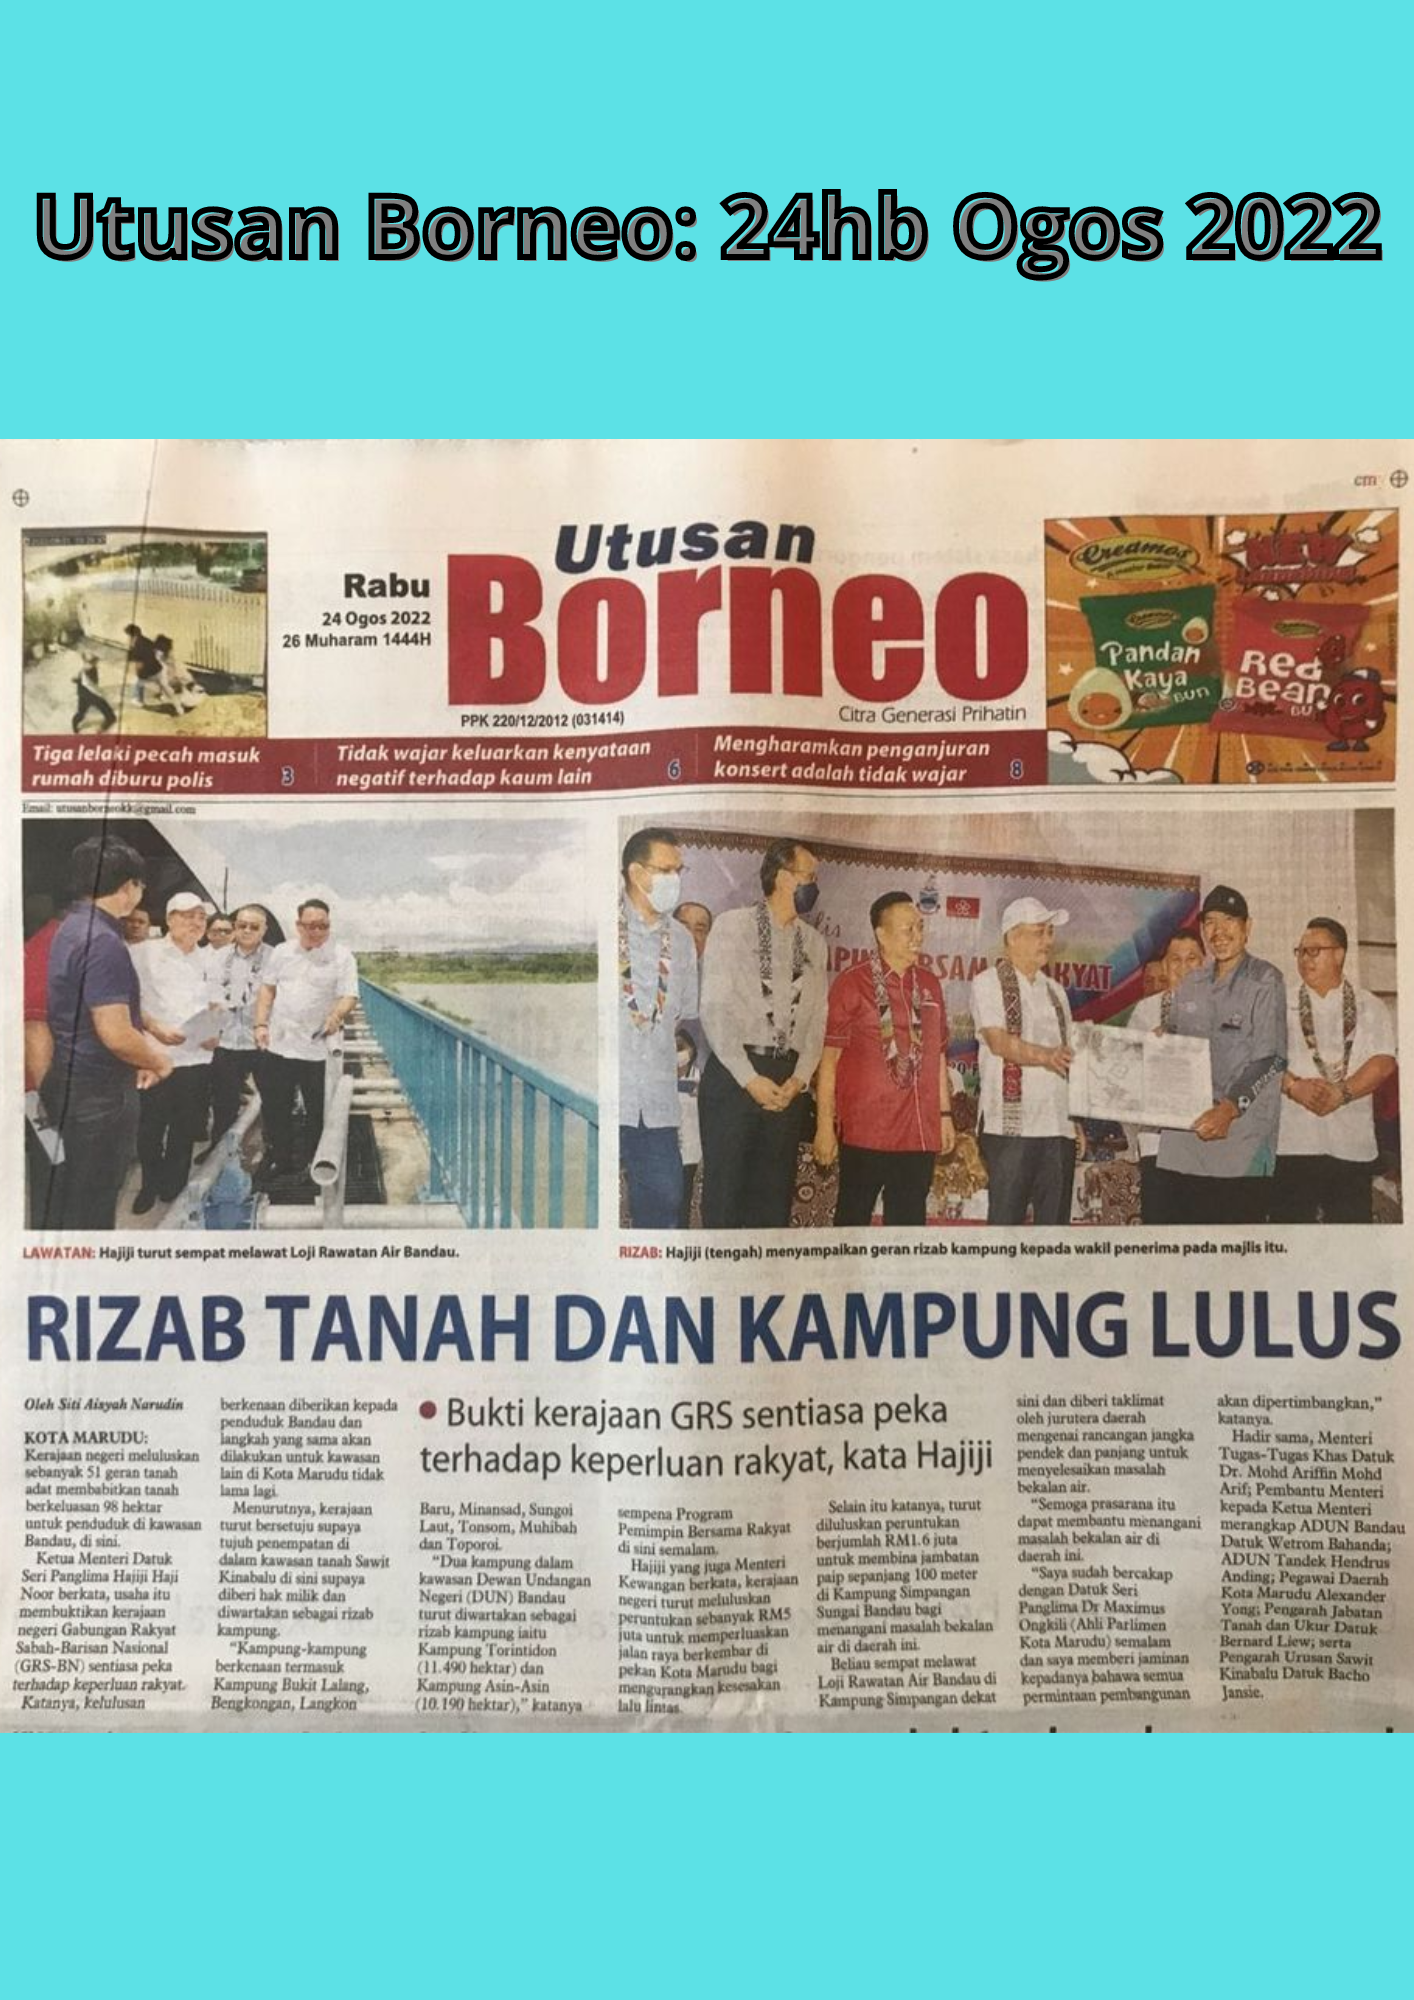 JTU PORTAL UPLOAD LISTS Utusan Borneo 24hb Ogos 2022.png